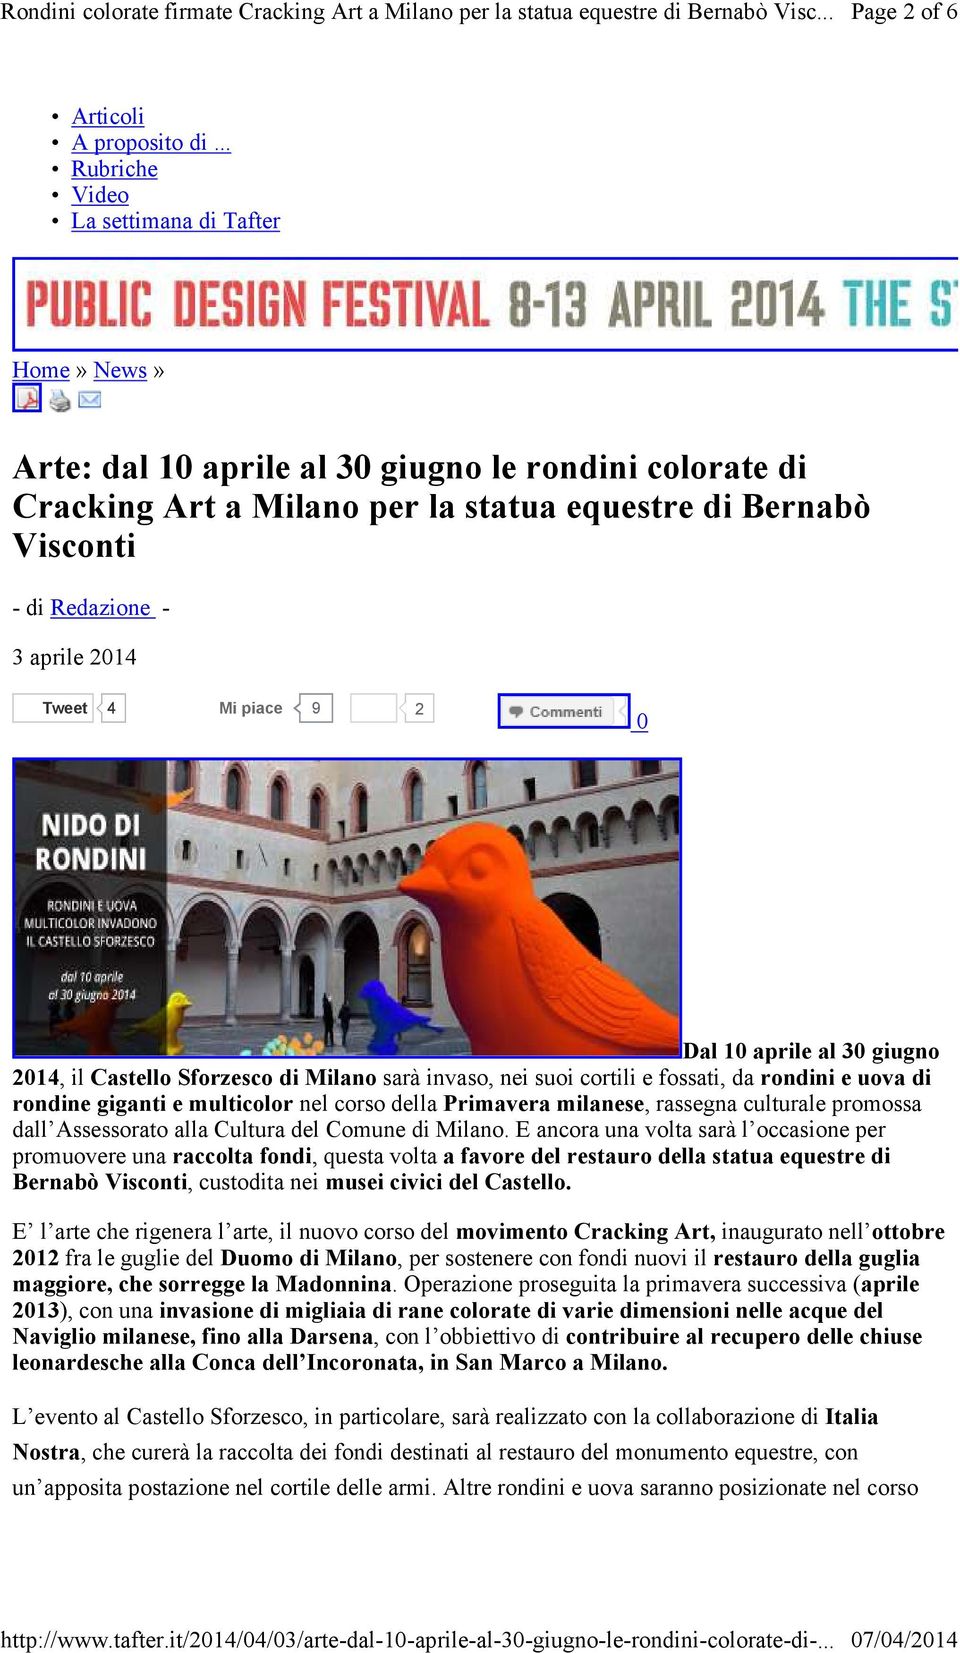 2014 Tweet 4 Mi piace 9 2 0 Dal 10 aprile al 30 giugno 2014, il Castello Sforzesco di Milano sarà invaso, nei suoi cortili e fossati, da rondini e uova di rondine giganti e multicolor nel corso della